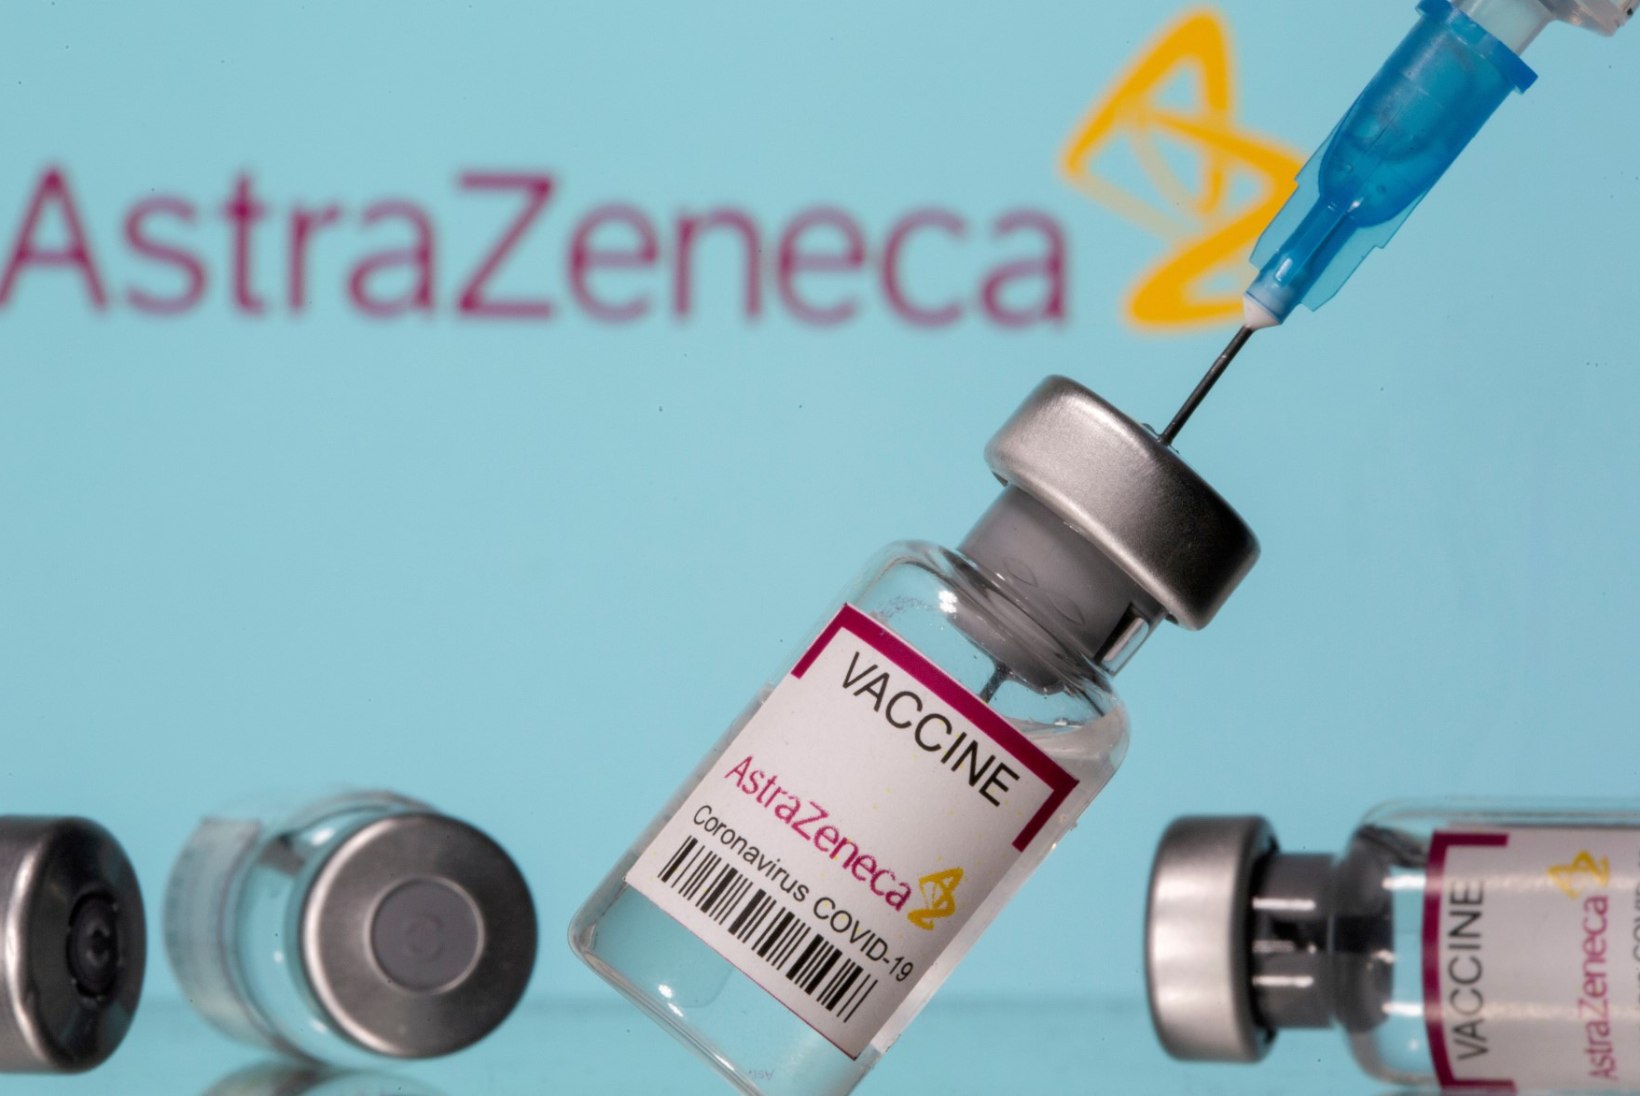 USA uuring: AstraZeneca vaktsiin on ohutu ja tõhus